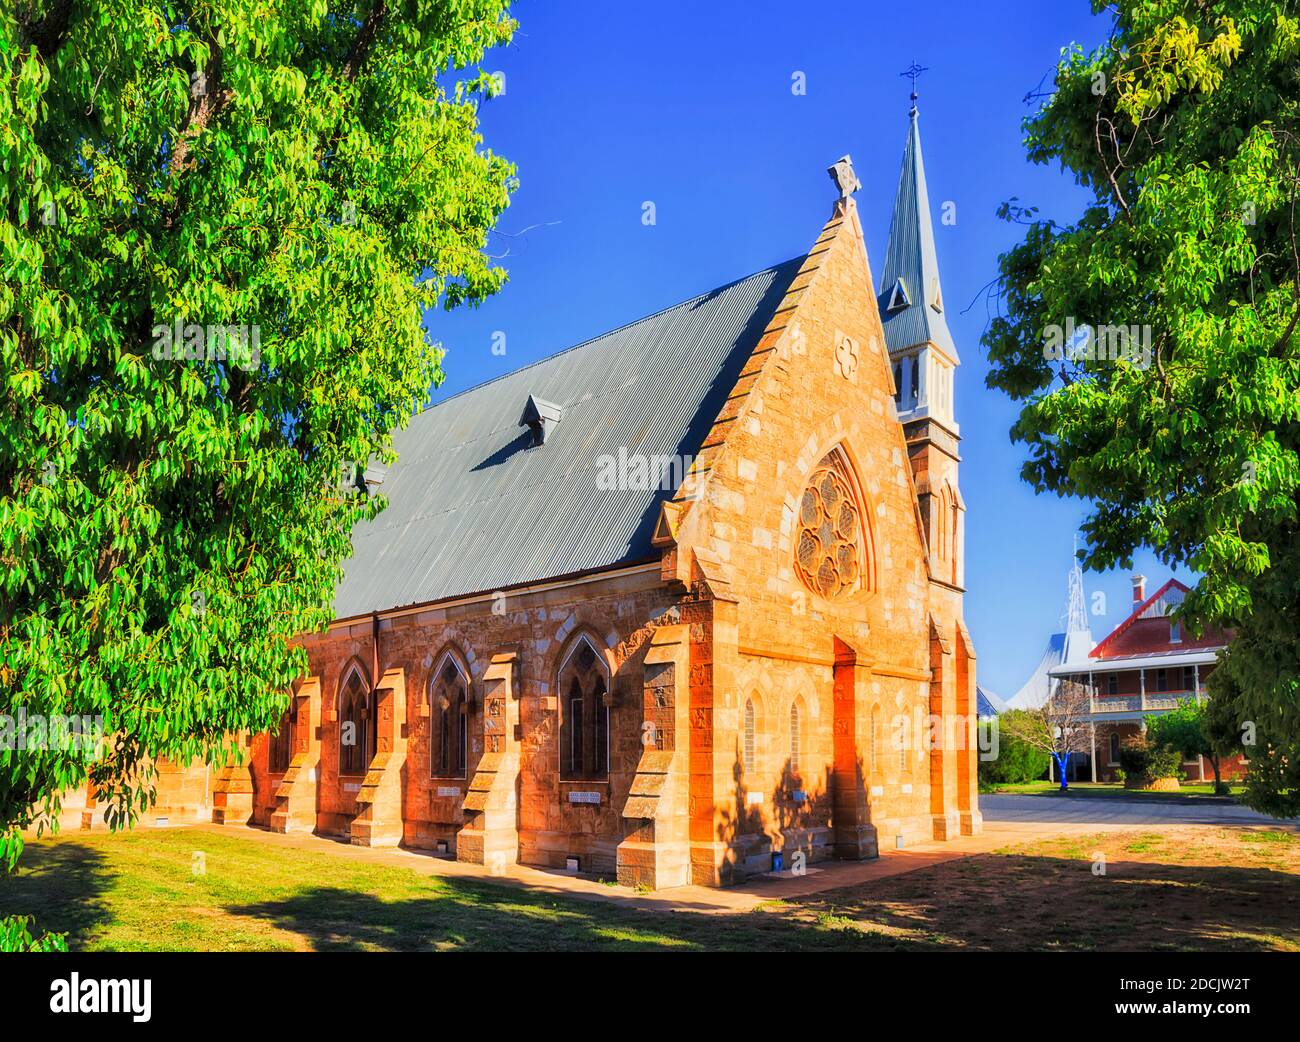 Église catholique en grès de style gothique dans la ville de Dubbo en Australie - grandes plaines occidentales. Banque D'Images